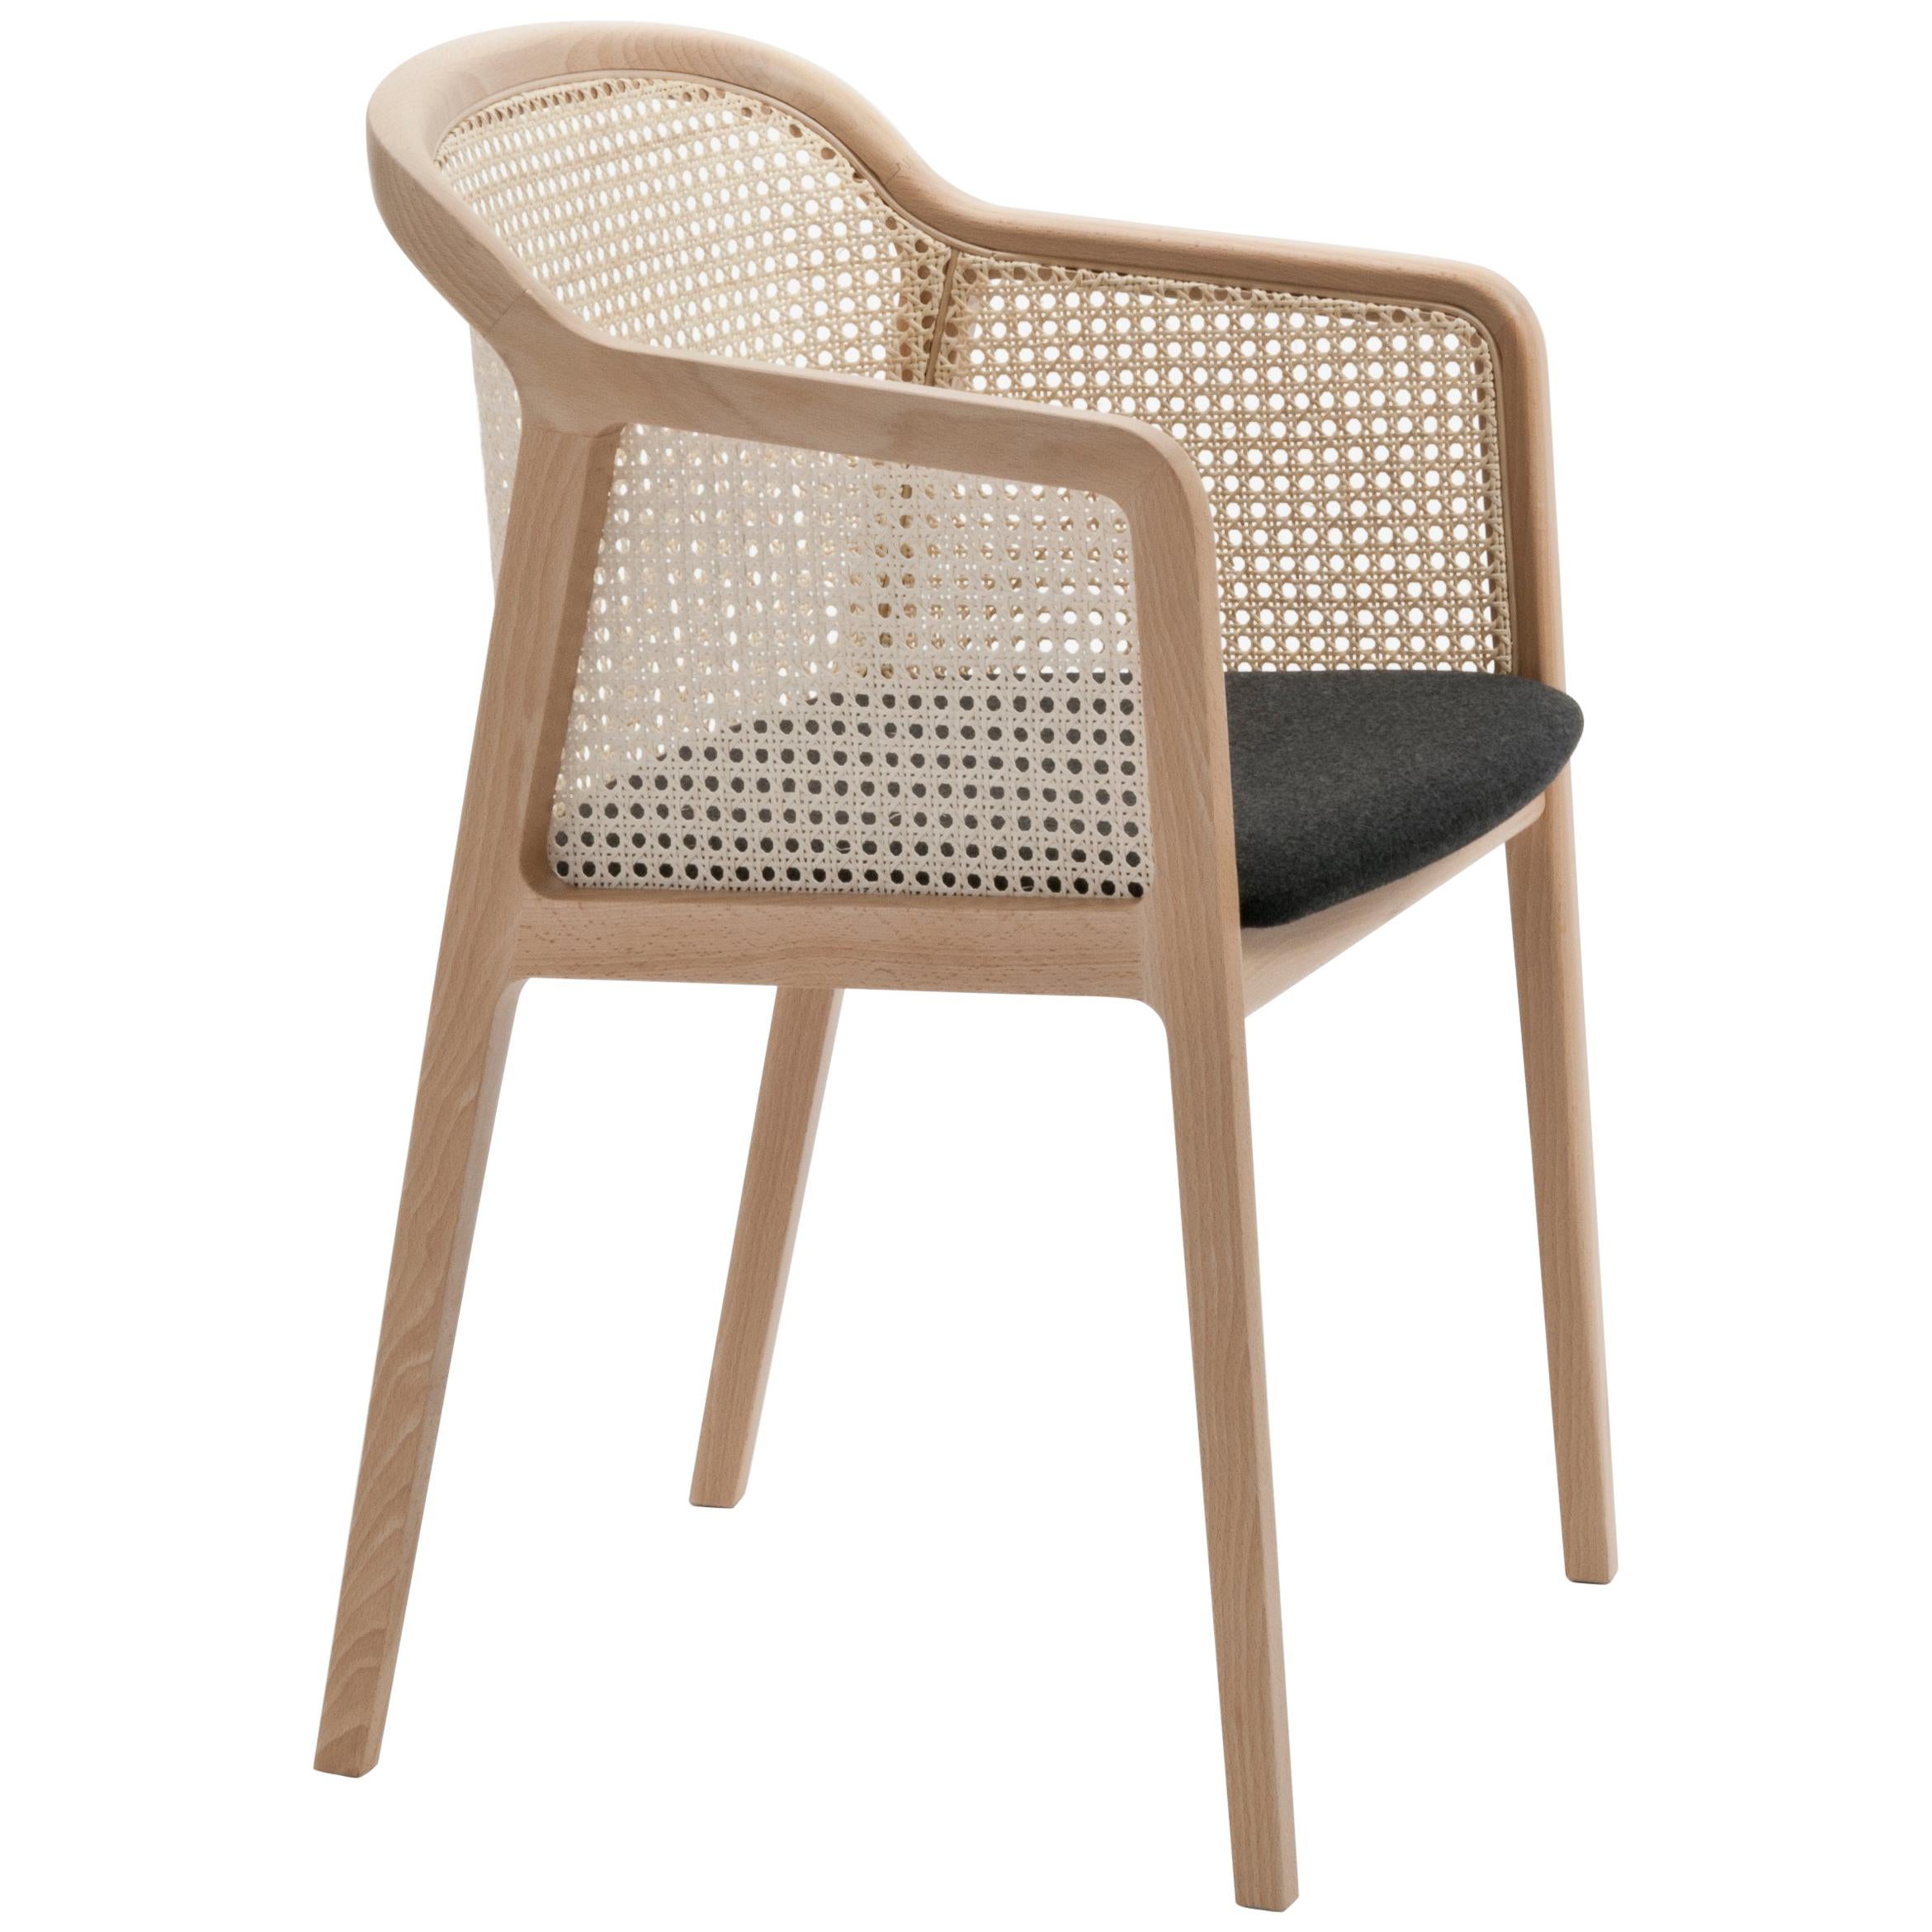 Fauteuil Vienna, design moderne en bois et paille, assise tapissée de feutre noir